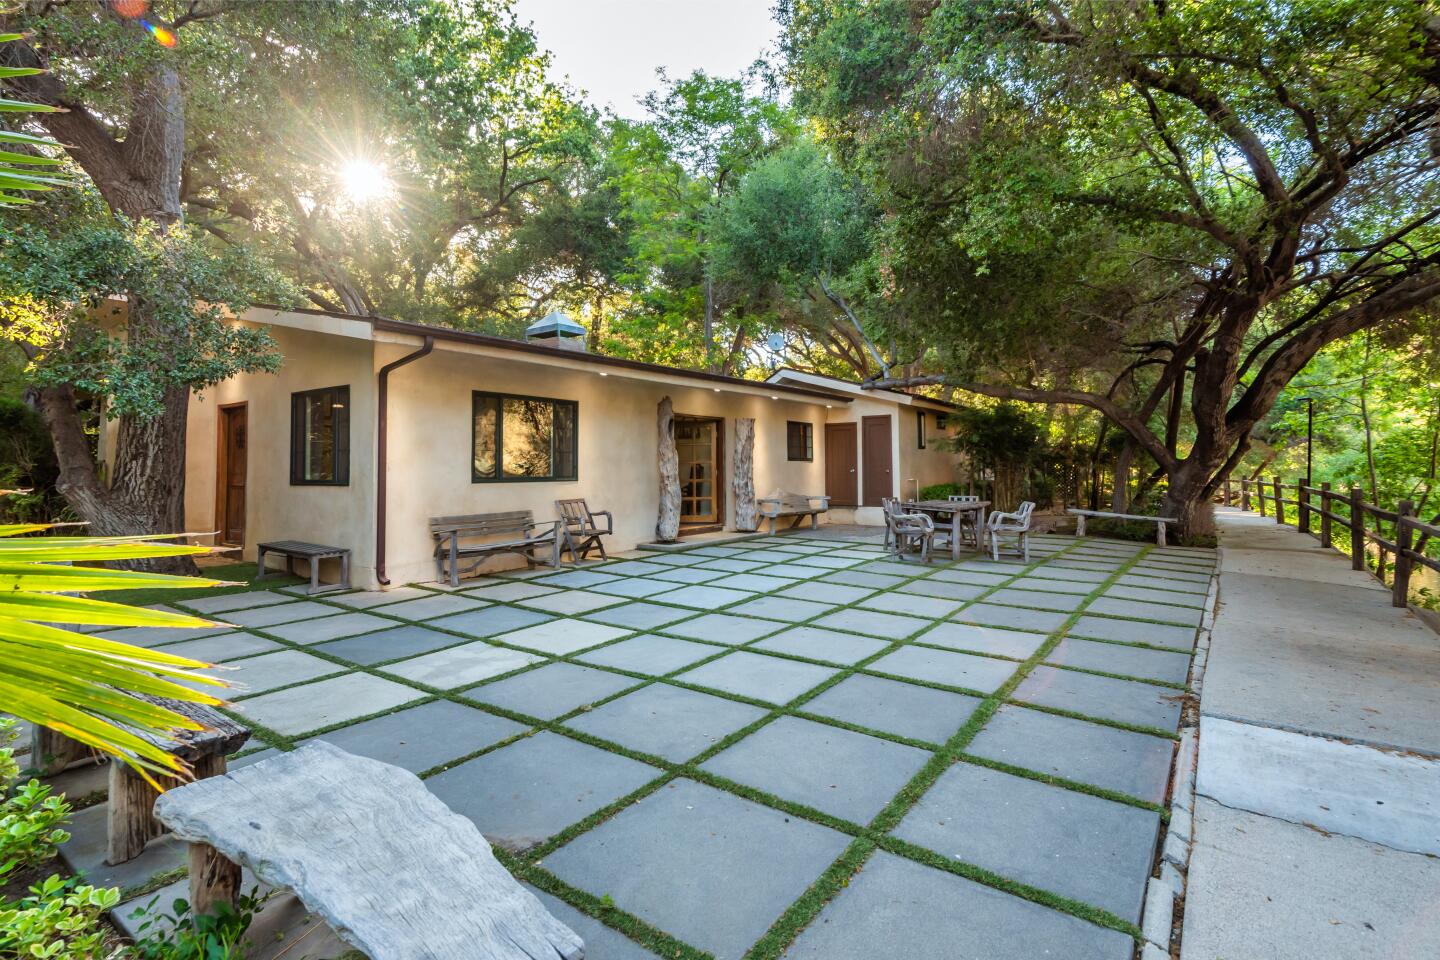 Square concrete tiles form a large patio behind a house.